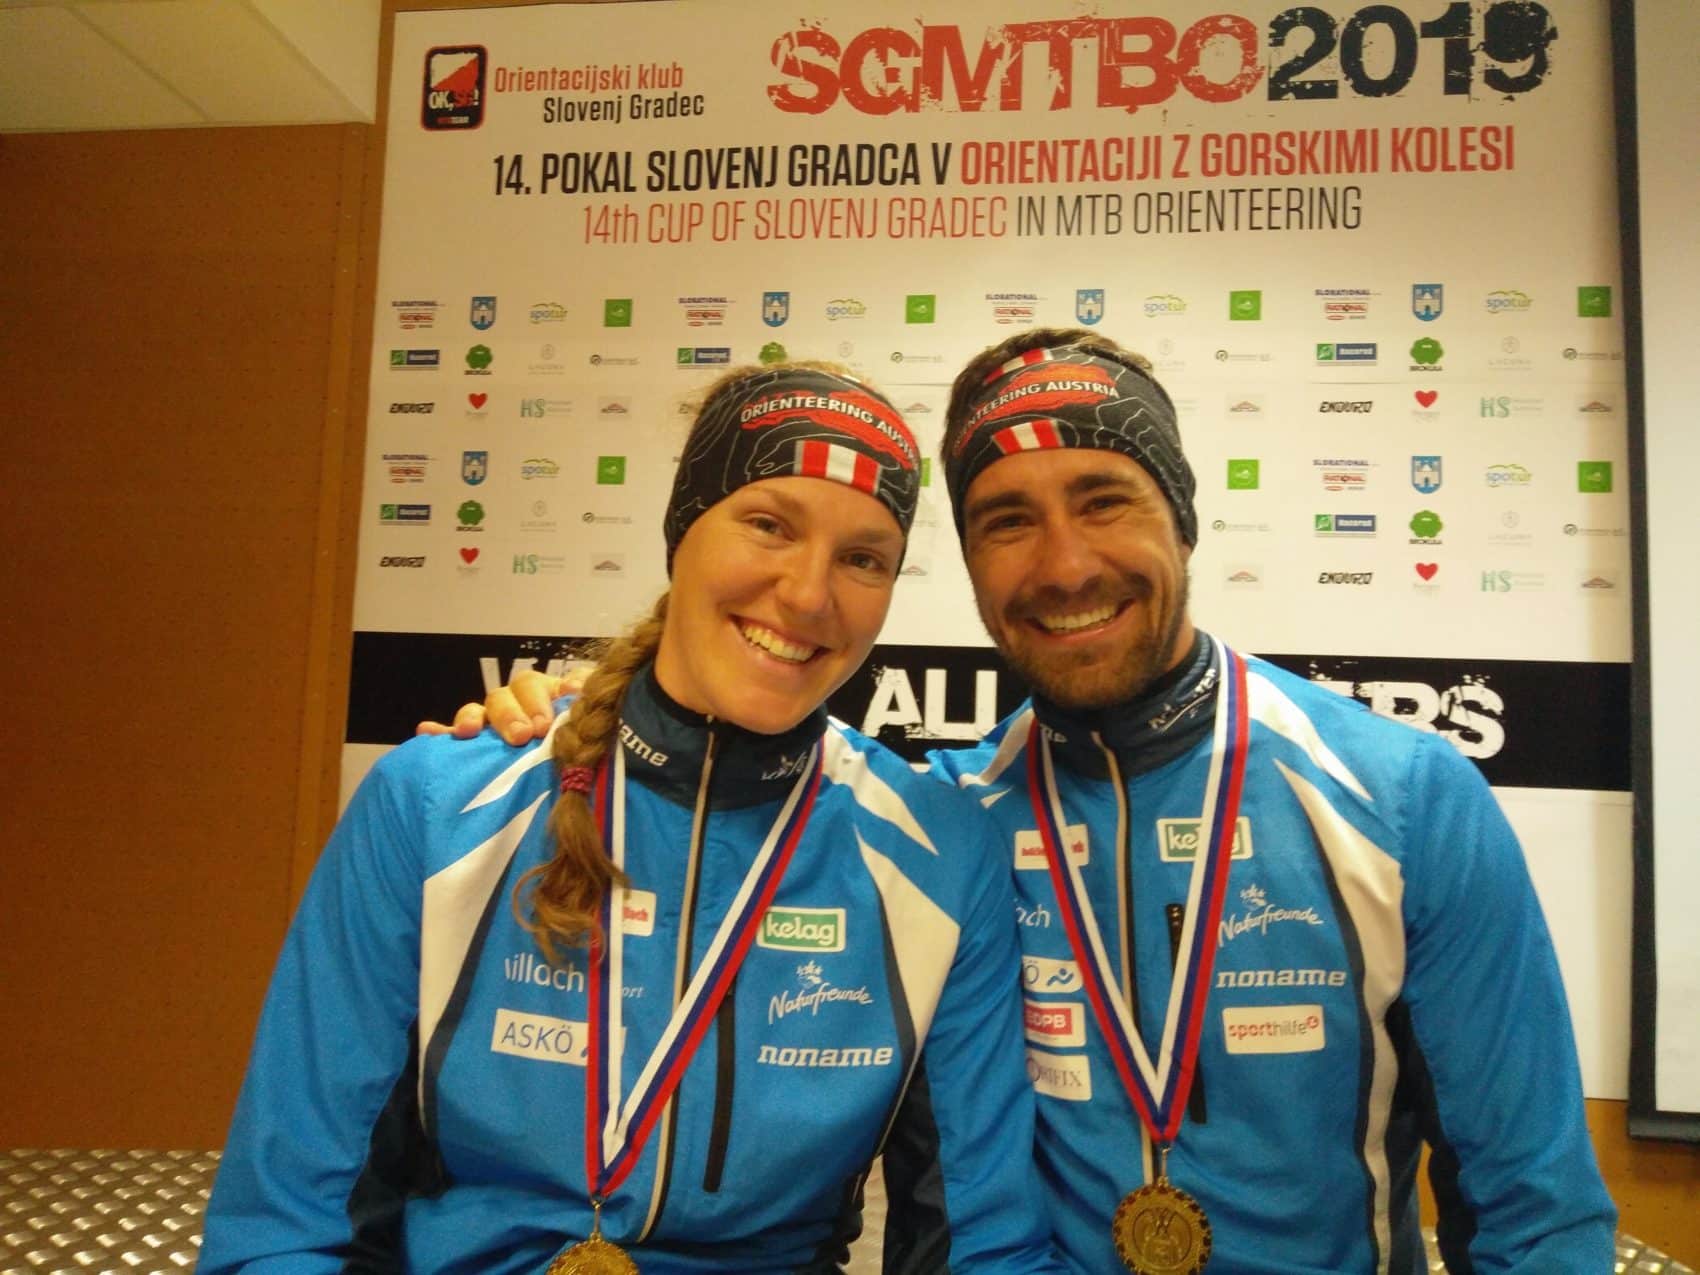 Marina Reiner und Kevin Haselsberger konnten sich für die Europameisterschaft qualifizieren.